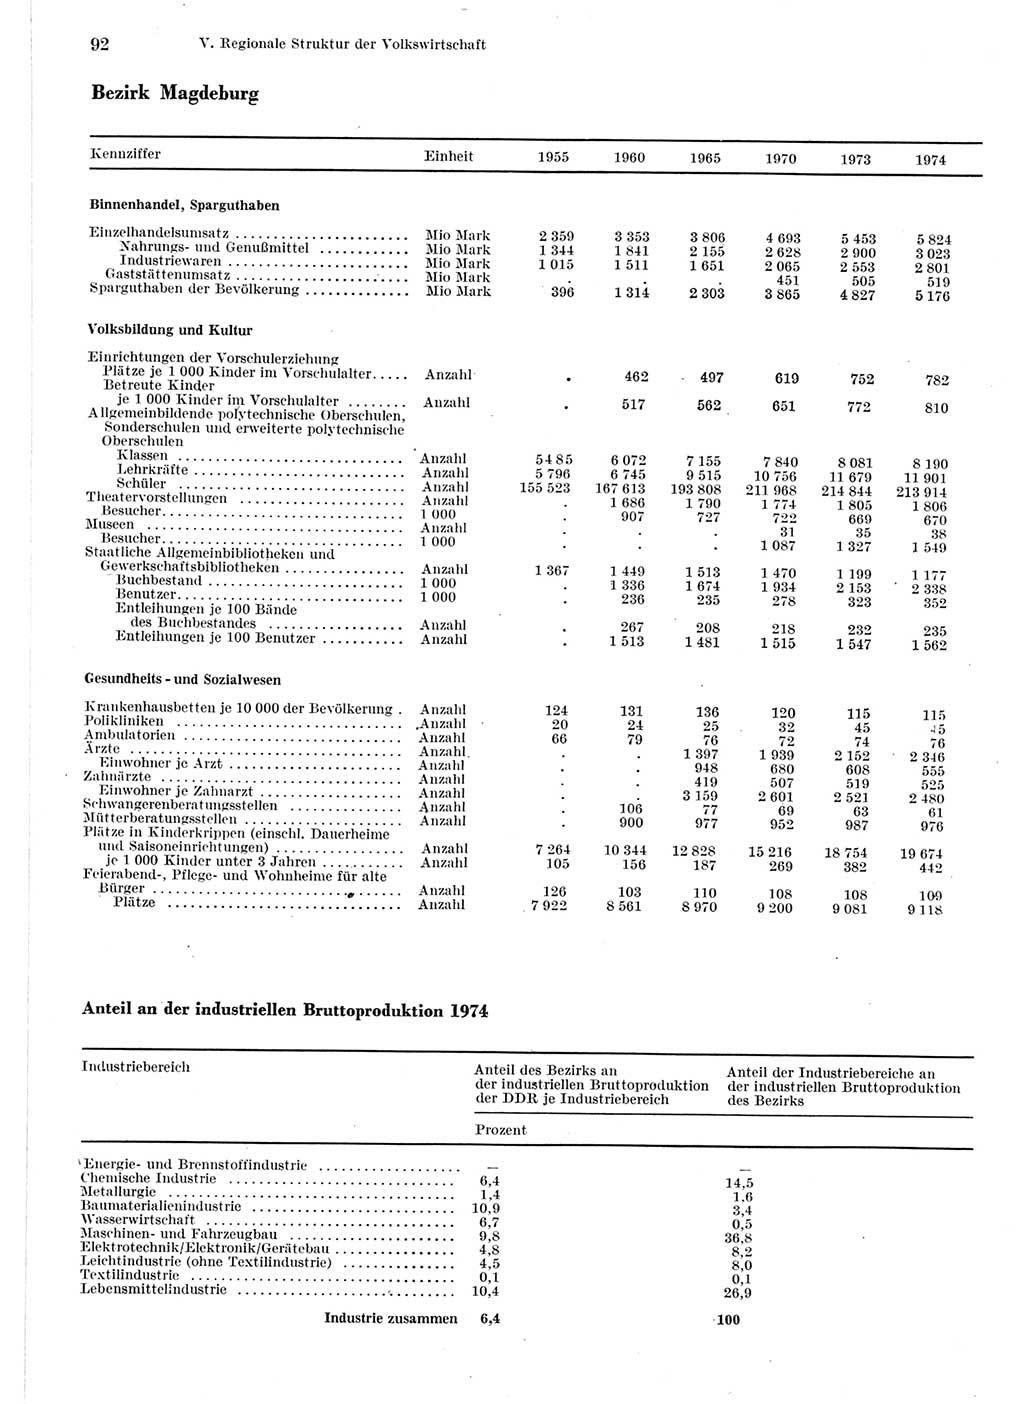 Statistisches Jahrbuch der Deutschen Demokratischen Republik (DDR) 1975, Seite 92 (Stat. Jb. DDR 1975, S. 92)